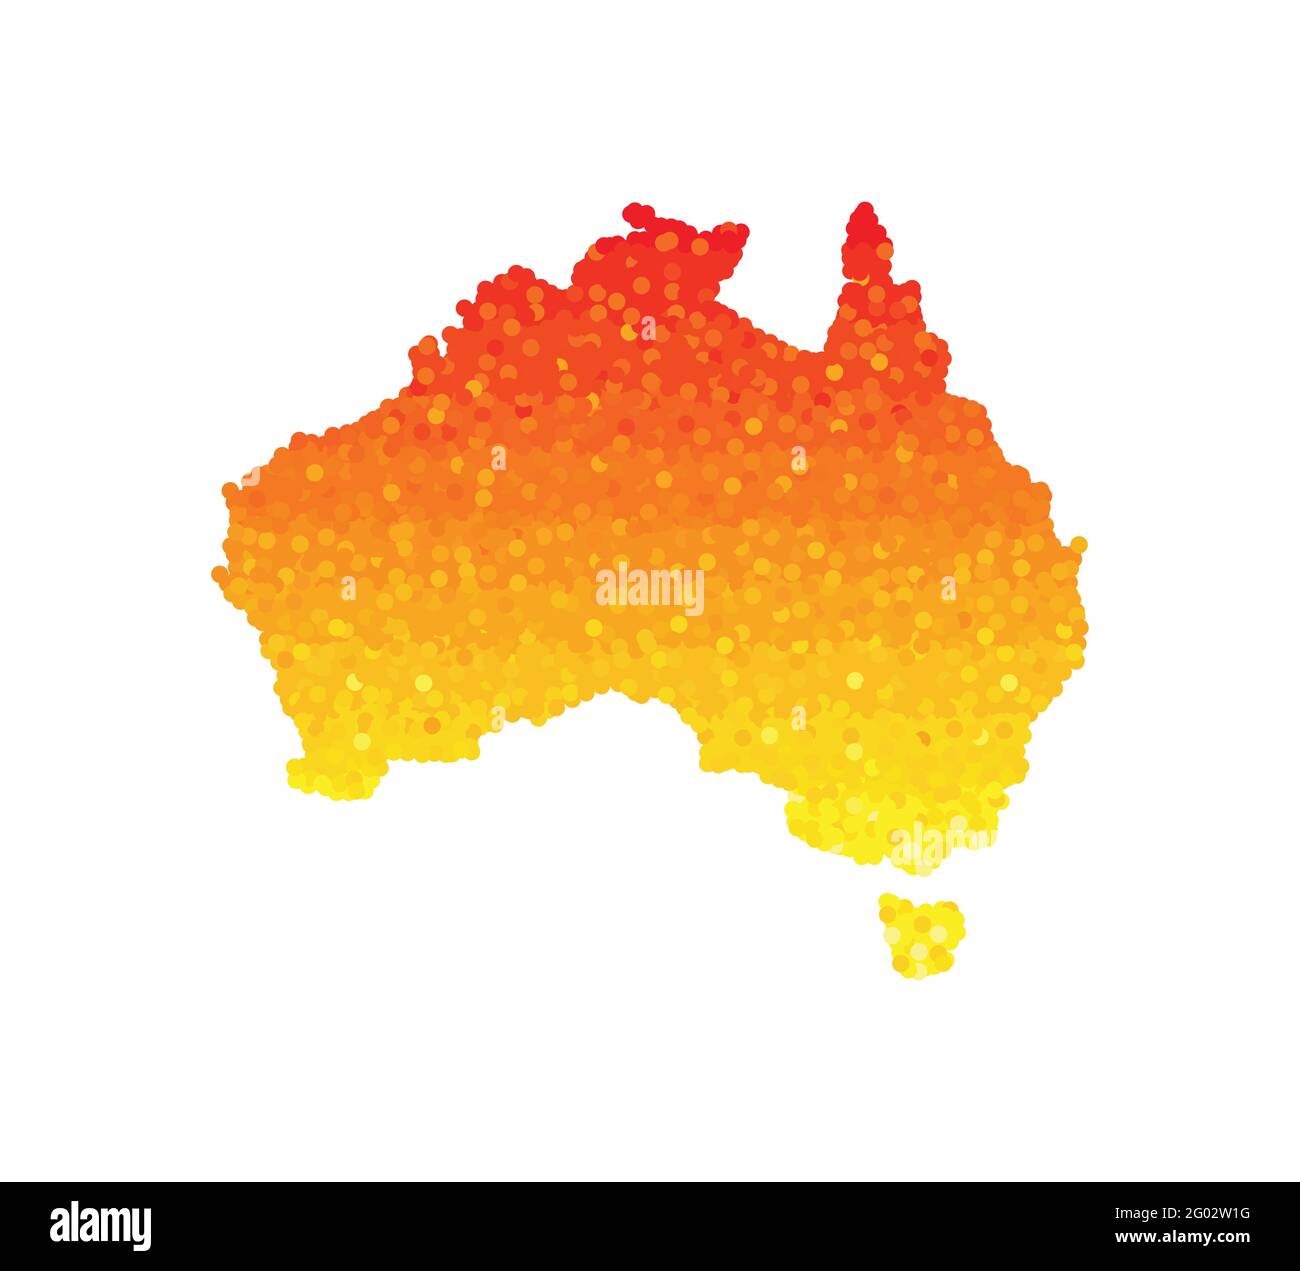 Vettore isolato illustrazione della mappa semplificata del continente australiano e della Tasmania. Colore rosso arancione, giallo. I colpi di stato come disastro nel 2020. Dangero Illustrazione Vettoriale